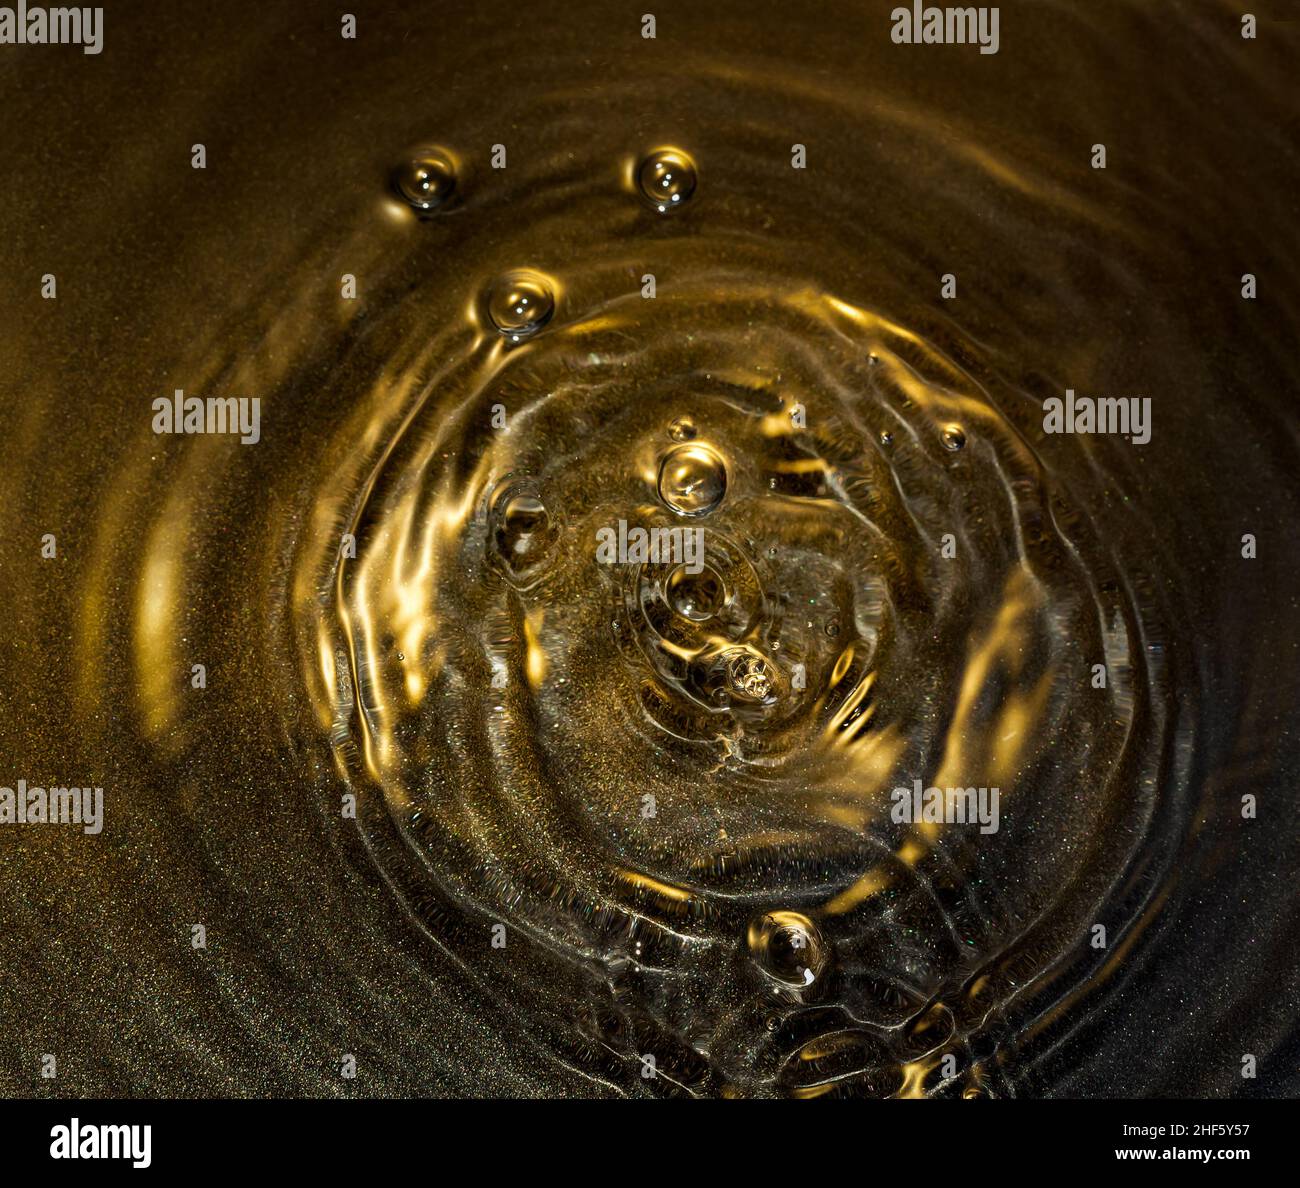 Fond doré avec anneaux d'eau Banque D'Images